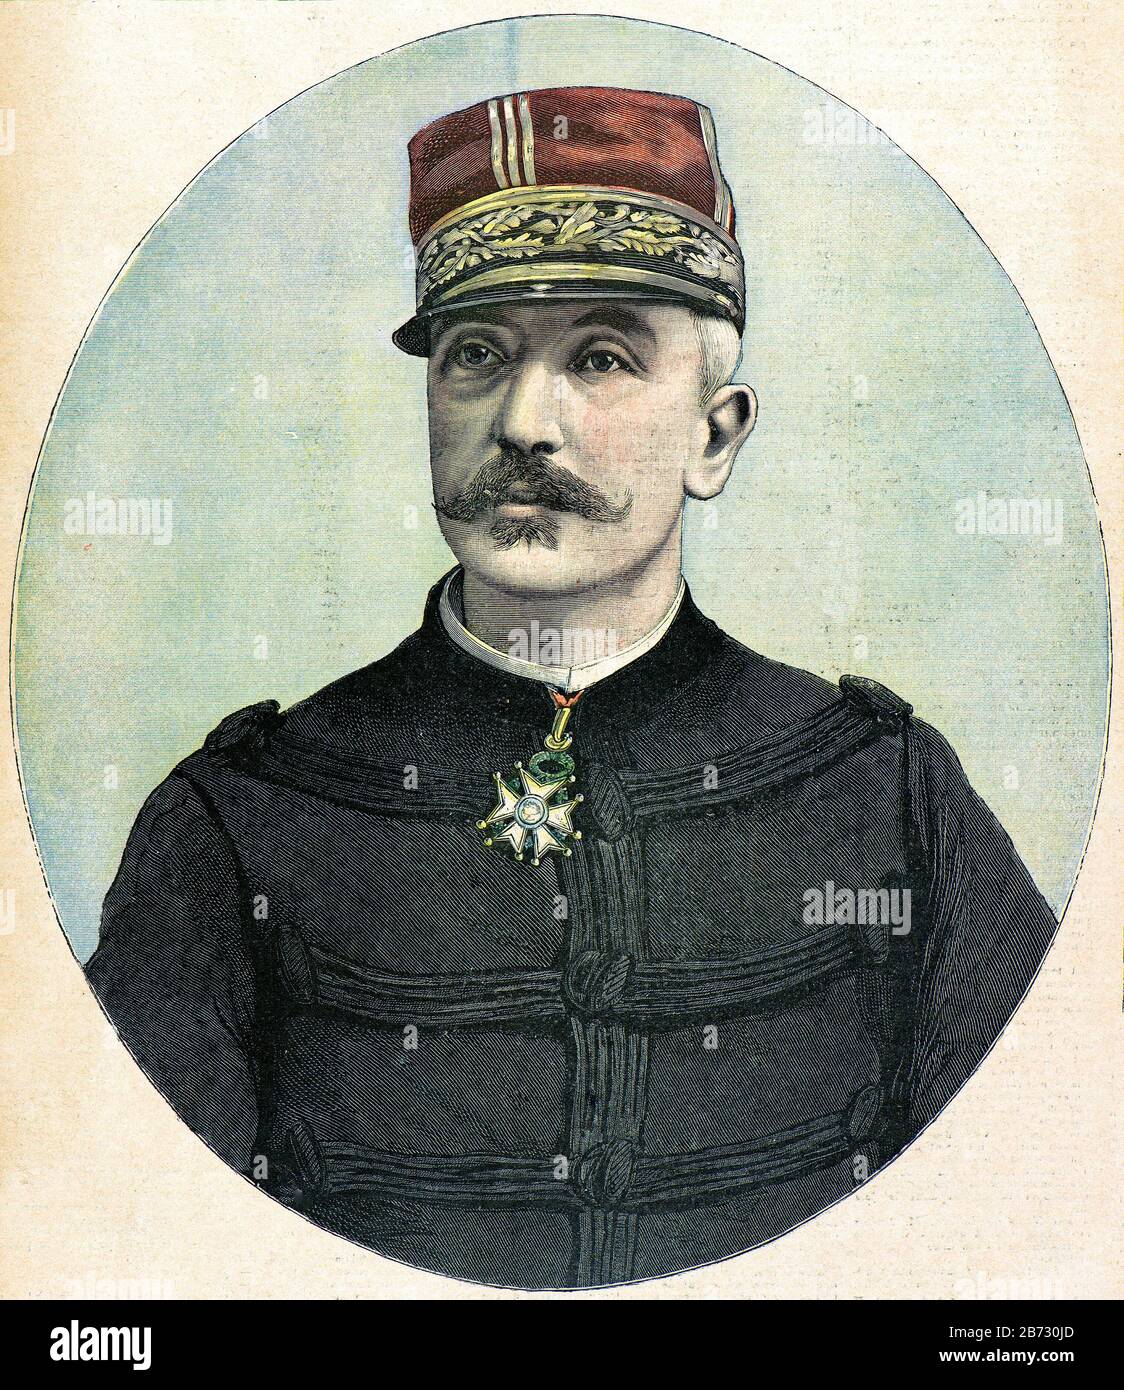 Incisione - Ritratto del Capo Di Stato Maggiore dell'esercito francese nel 1893, Generale Raoul le Mouton de Boisdeffre (1839 - 1919) - Collezione privata Foto Stock